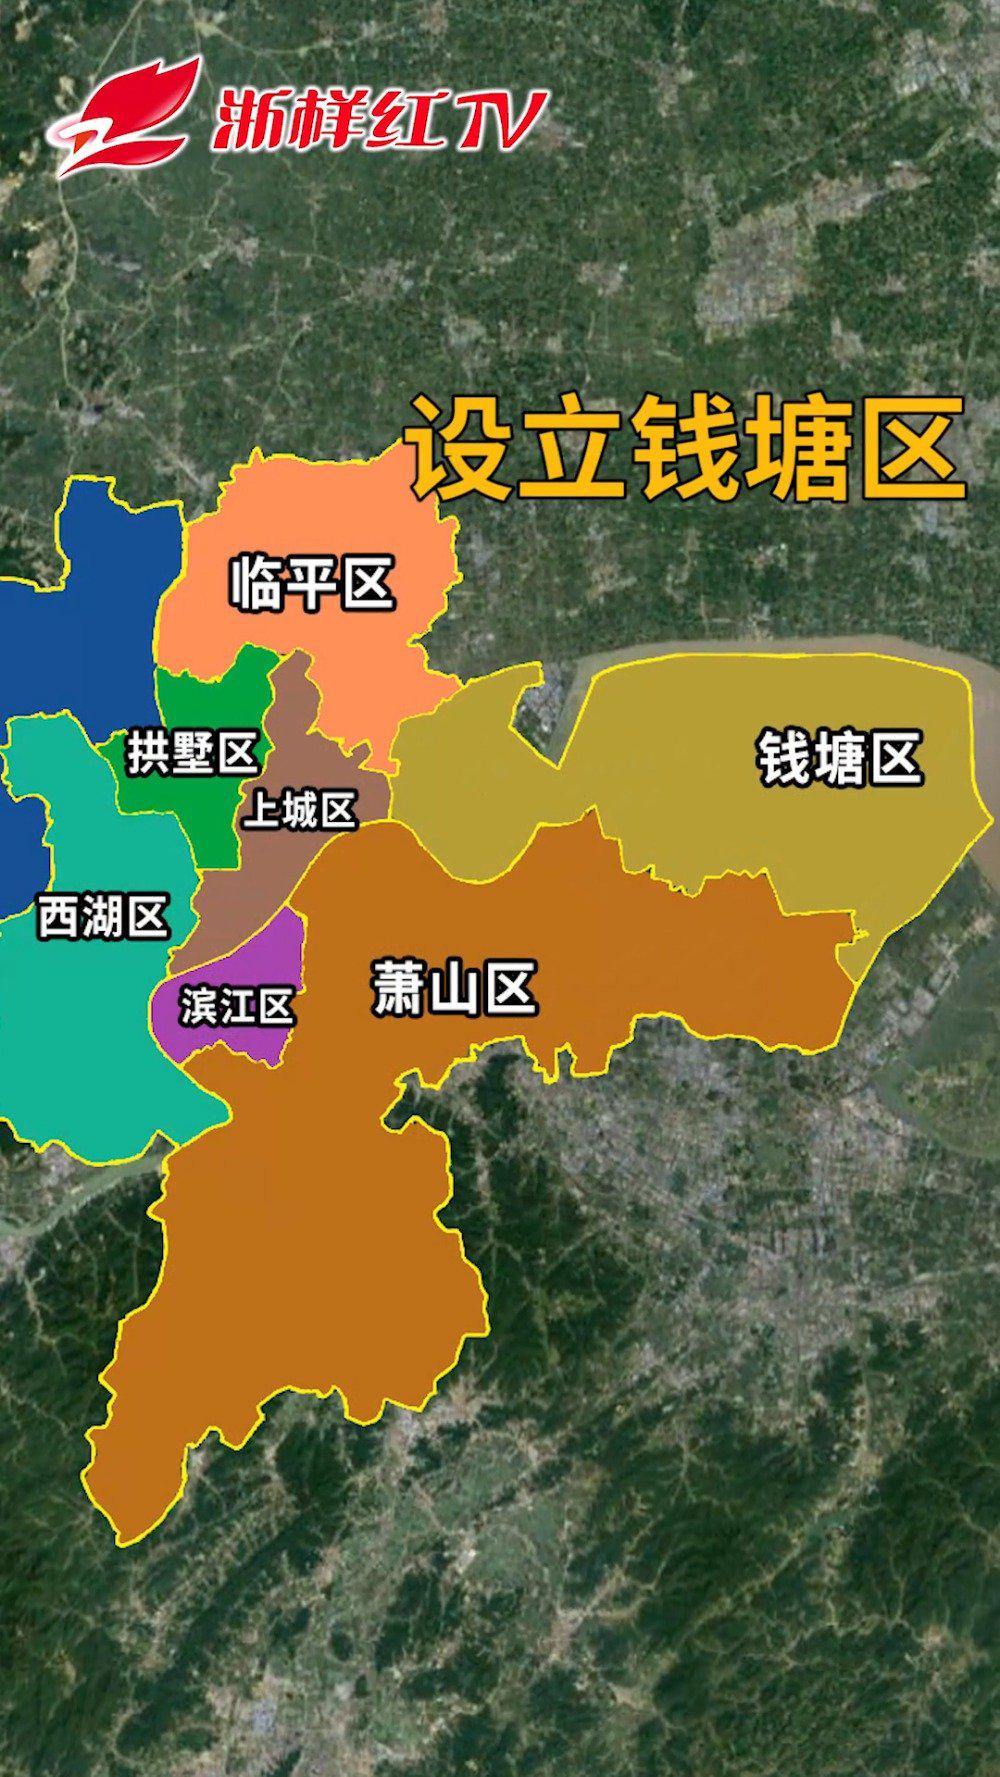 杭州市新区划分图图片